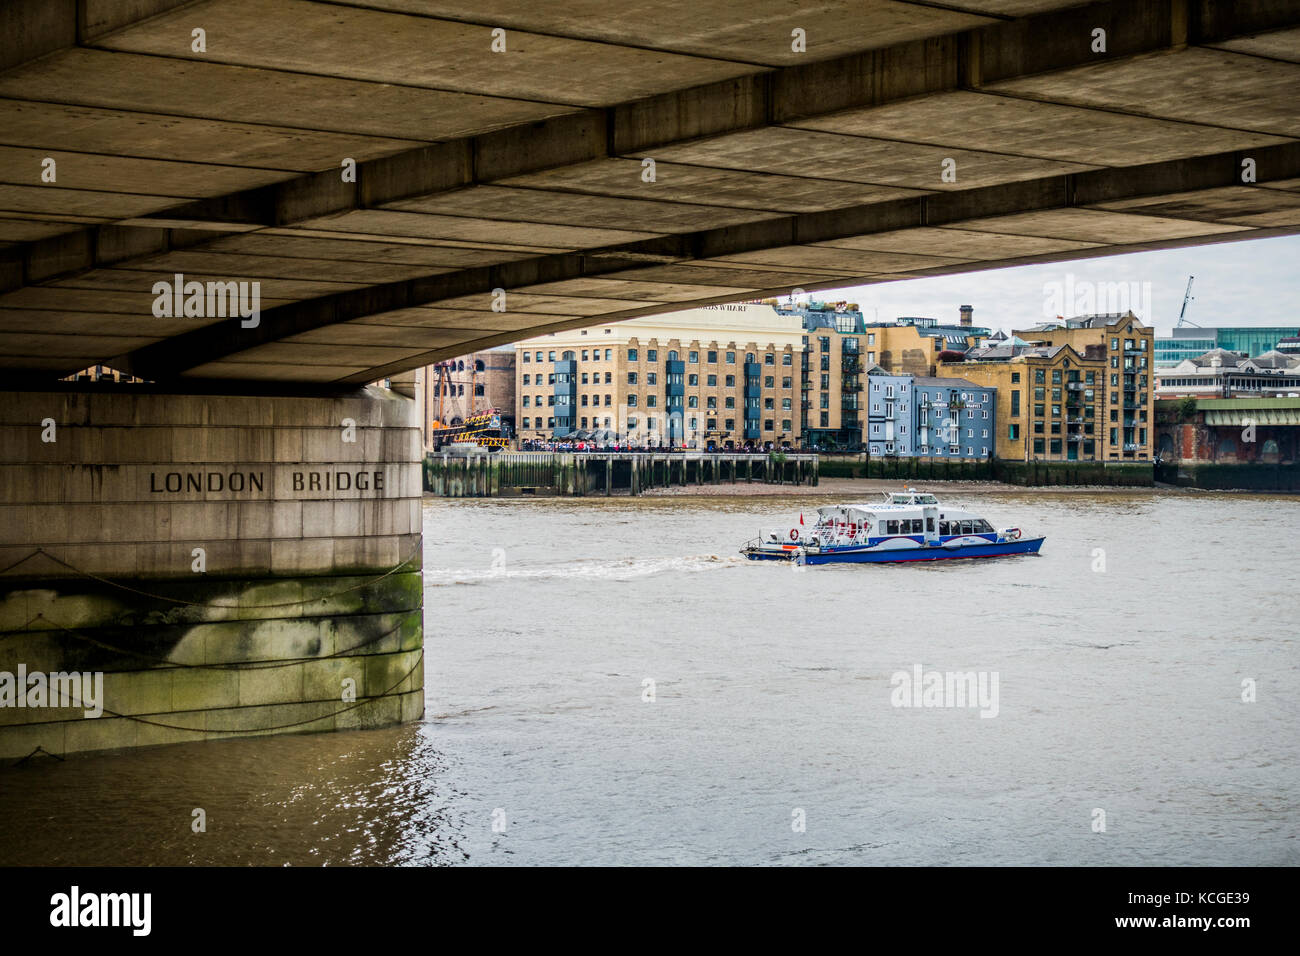 Una gita di piacere in barca a vela sul Fiume Tamigi, dominato da edifici di appartamenti e la parte inferiore del ponte di Londra, Inghilterra, Regno Unito. Foto Stock